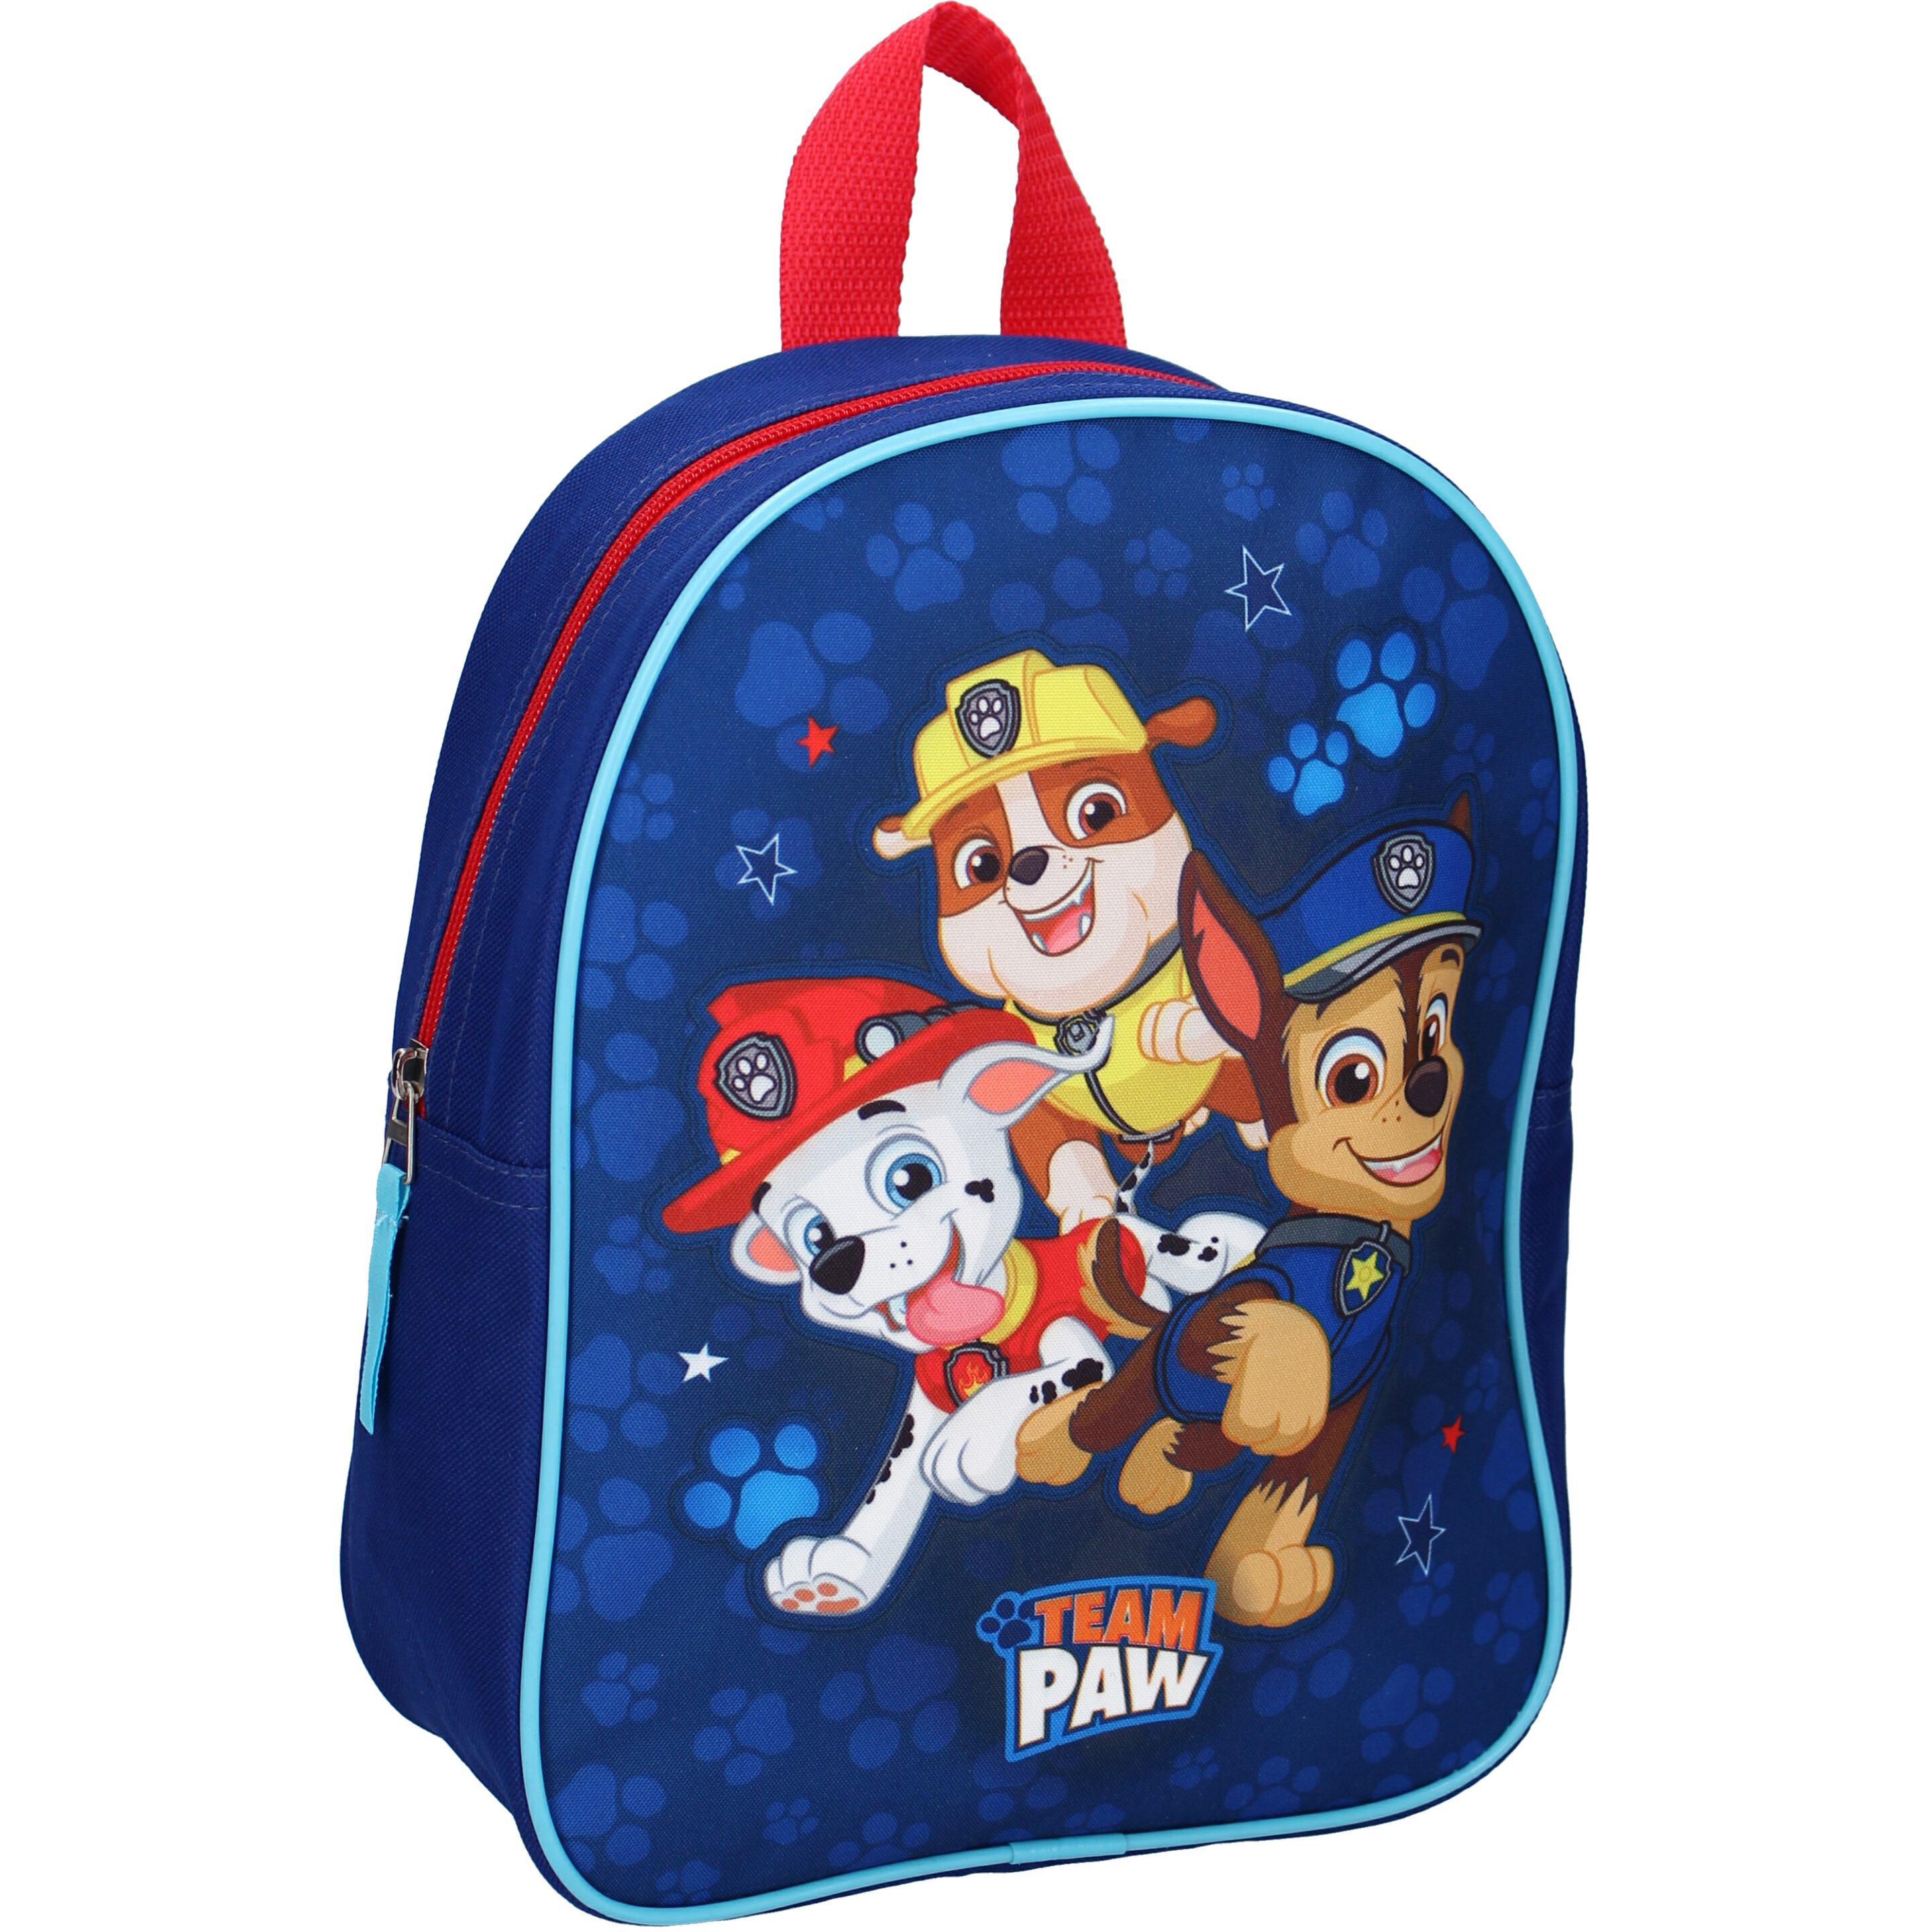 Paw Patrol Marshall/Rubble/Chase schooltasje tas voor kinderen -